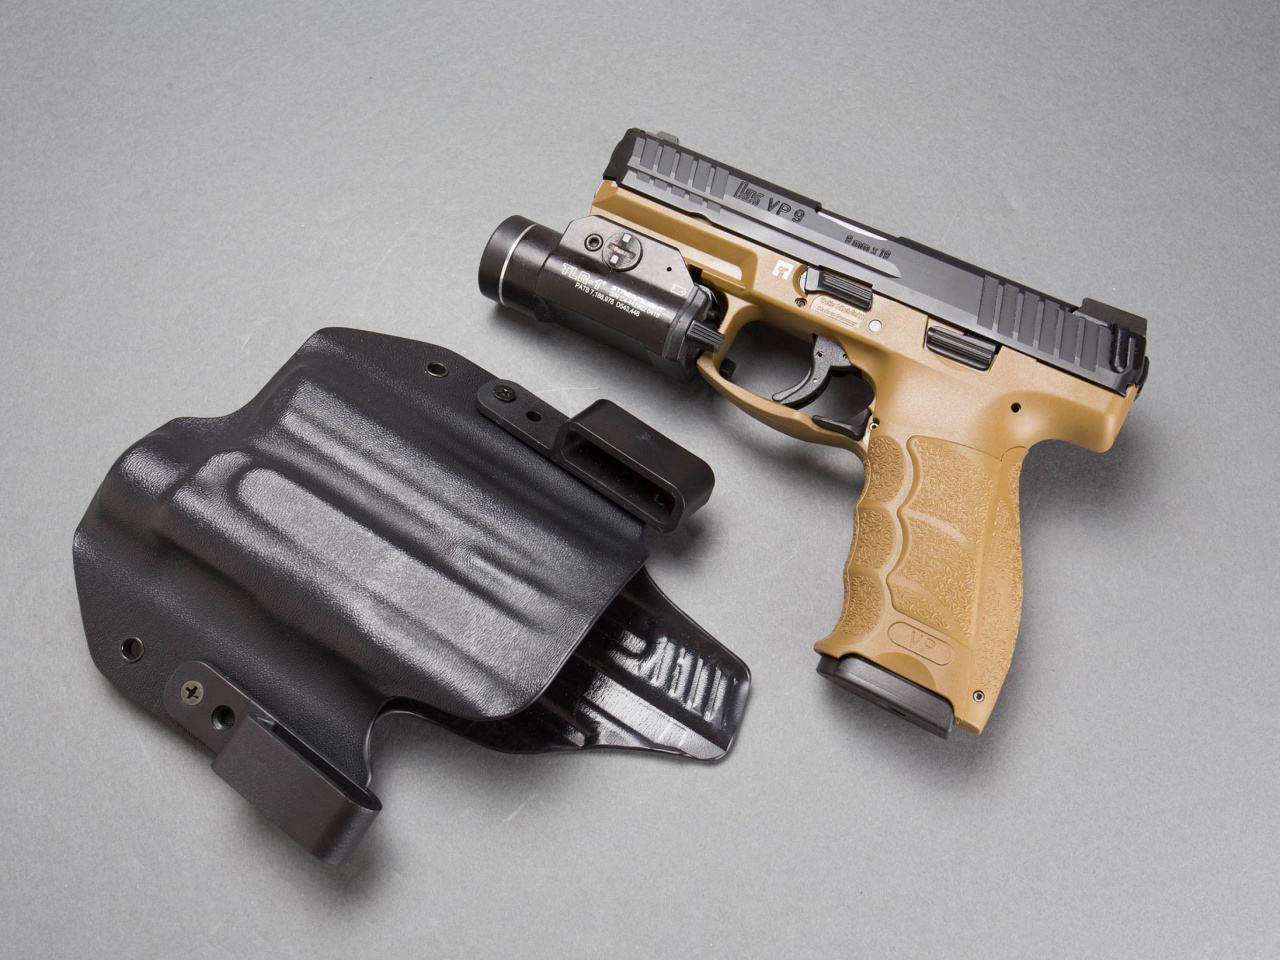 Pistols Heckler & Koch 9mm wallpaper 1280x960